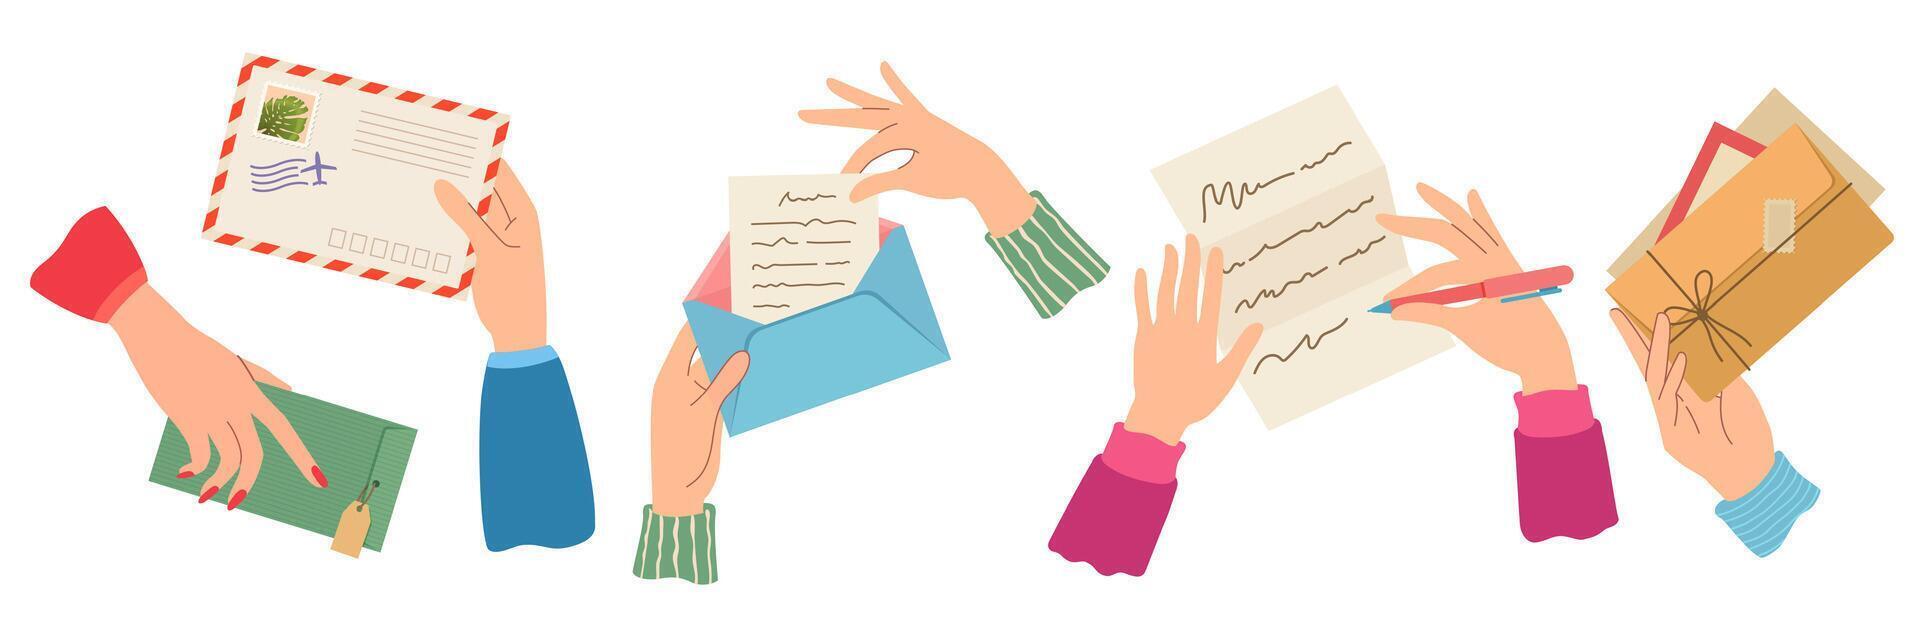 Hände Senden Brief. weiblich Hand halten Umschläge mit Briefmarken, schreiben und lesen Papier Briefe. modisch Post Karten, Mail Lieferung Vektor einstellen